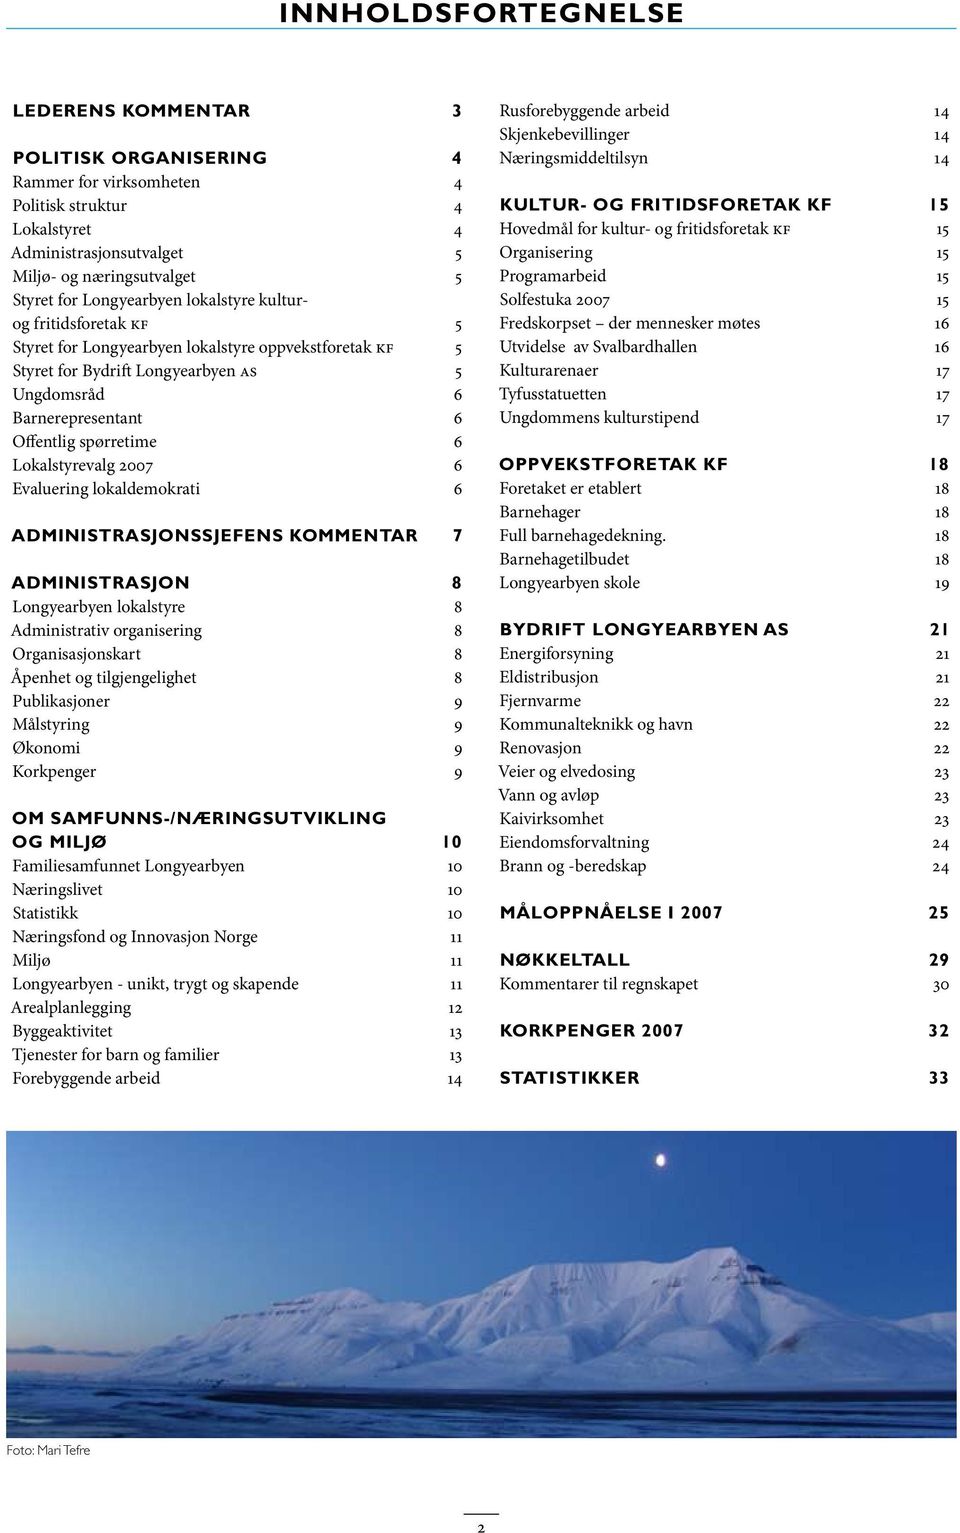 6 Lokalstyrevalg 27 6 Evaluering lokaldemokrati 6 Administrasjonssjefens kommentar 7 Administrasjon 8 Longyearbyen lokalstyre 8 Administrativ organisering 8 Organisasjonskart 8 Åpenhet og